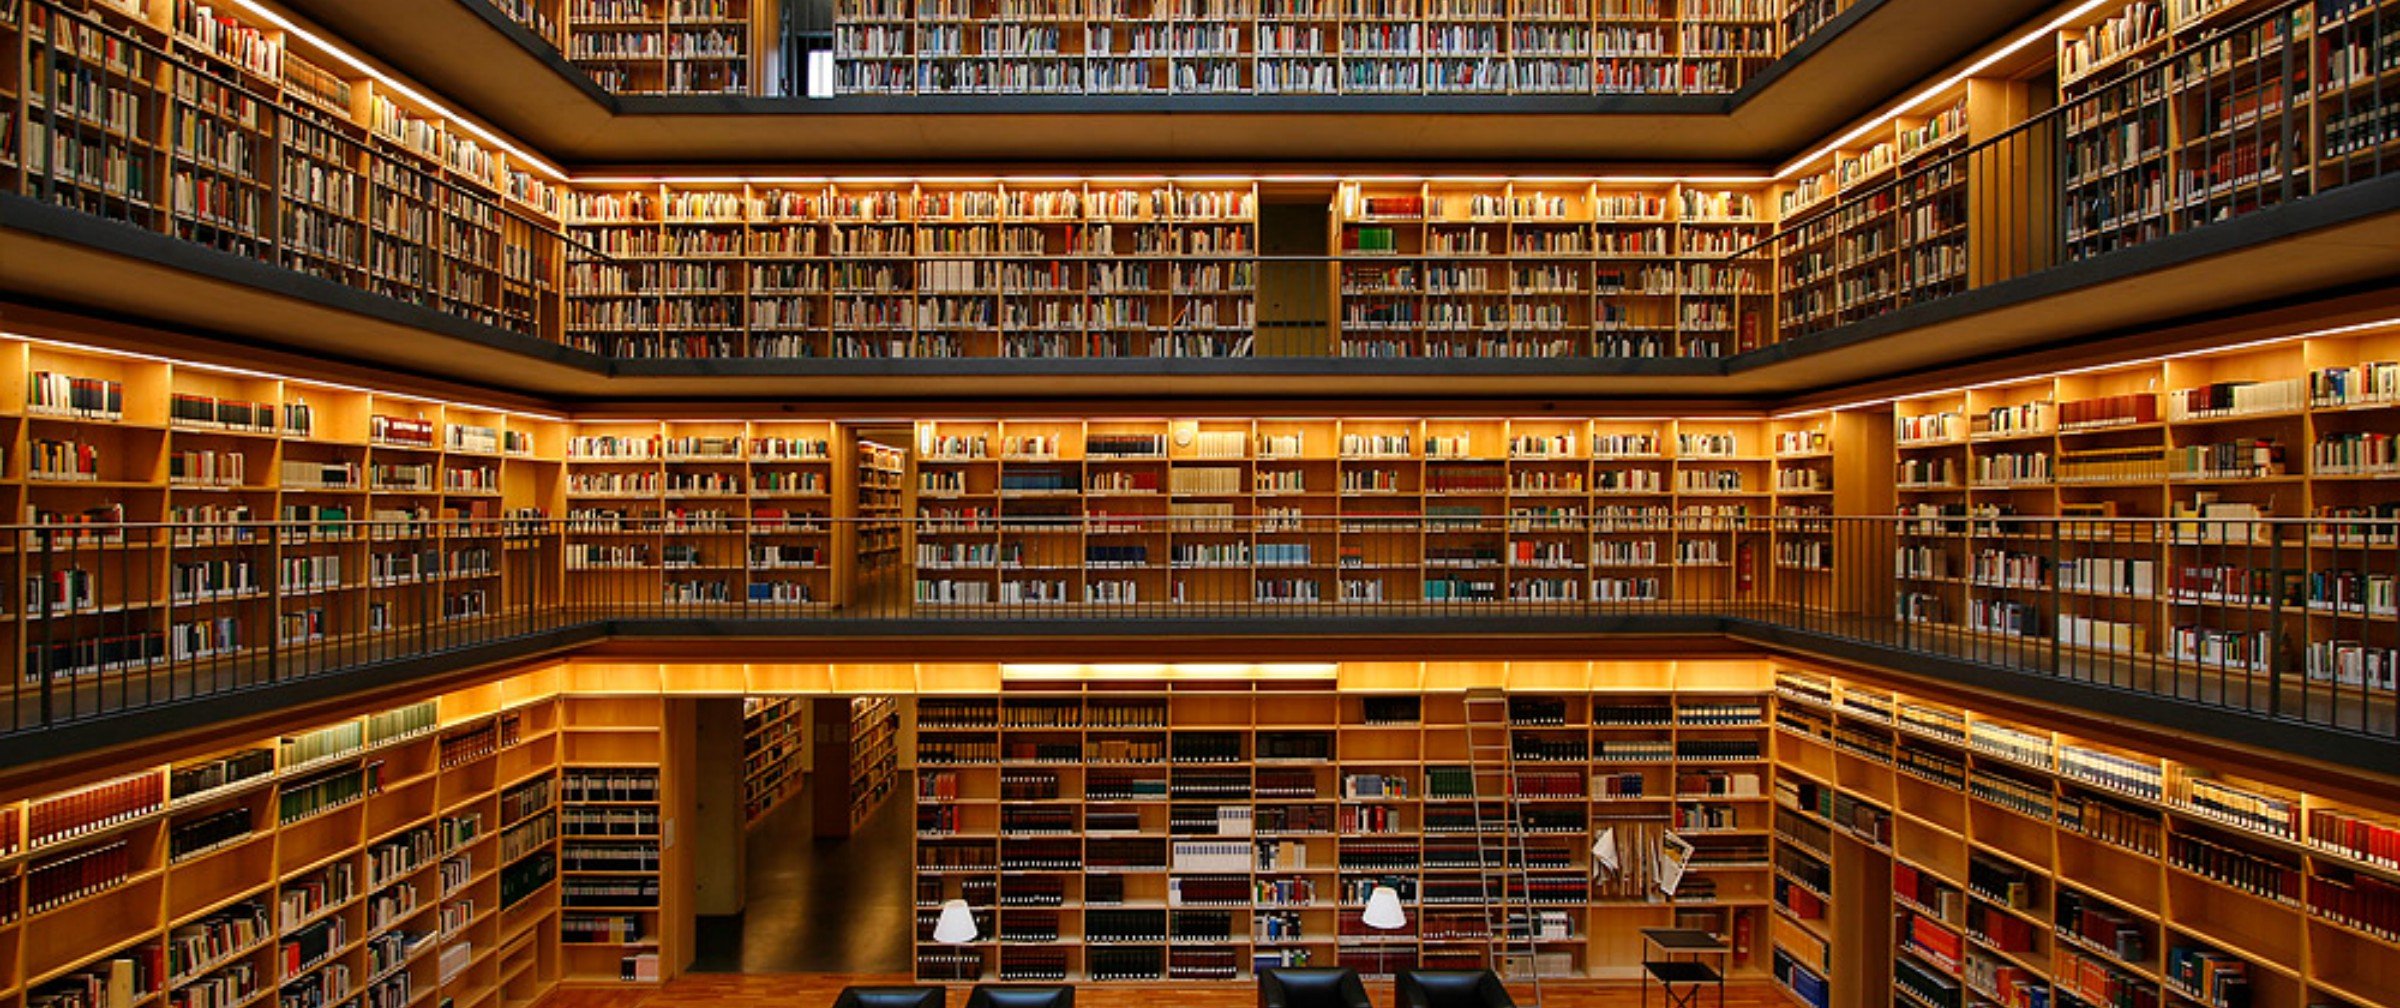 Page library. 19-Ярусное книгохранилище РГБ. Библиотека Phillips Exeter. Красивая библиотека. Большая библиотека.